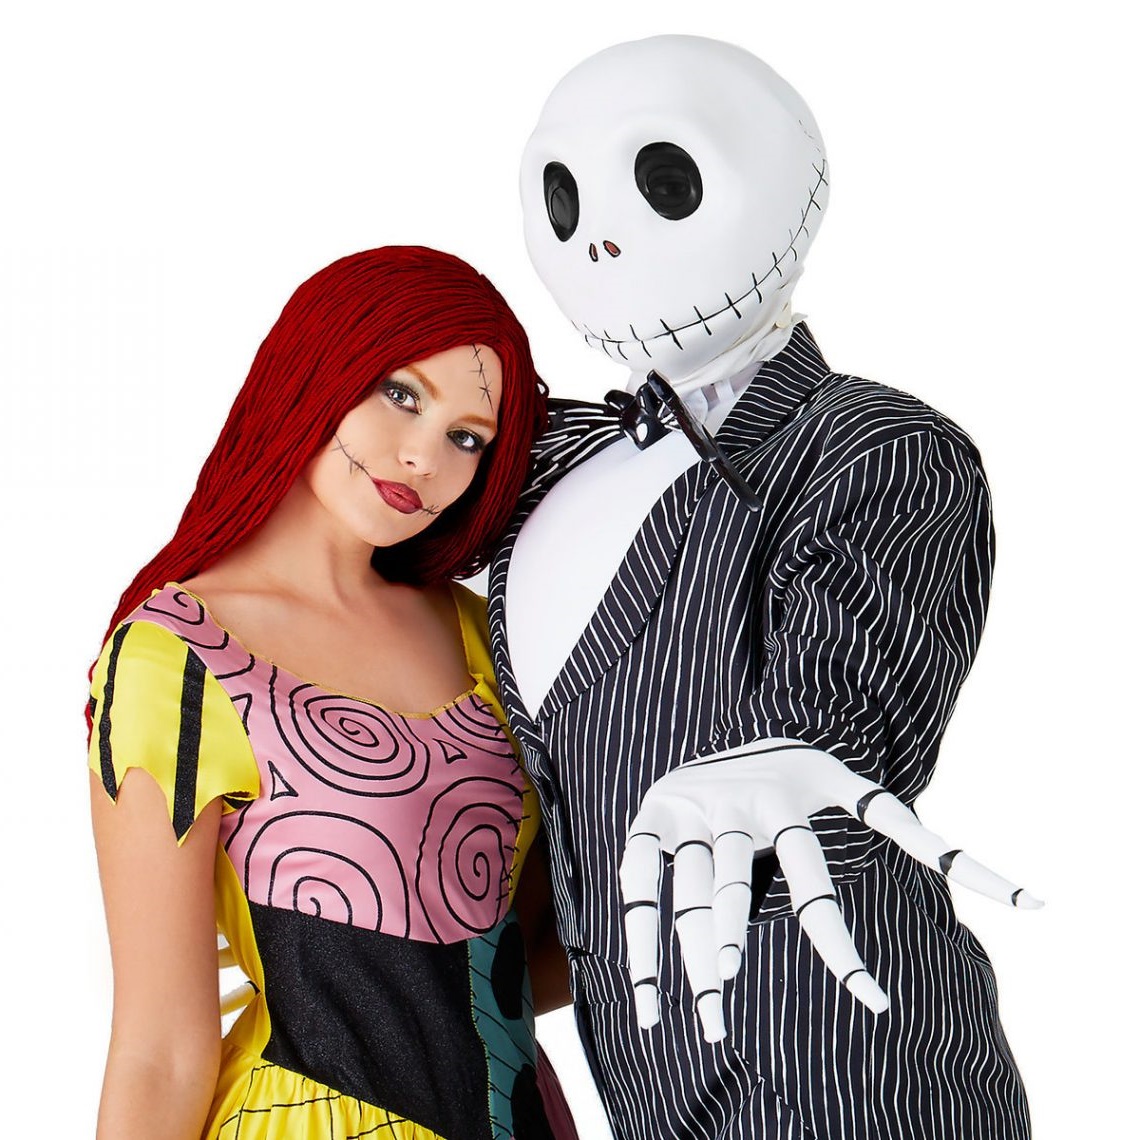 Costume d'Halloween pour vous et votre partenaire.